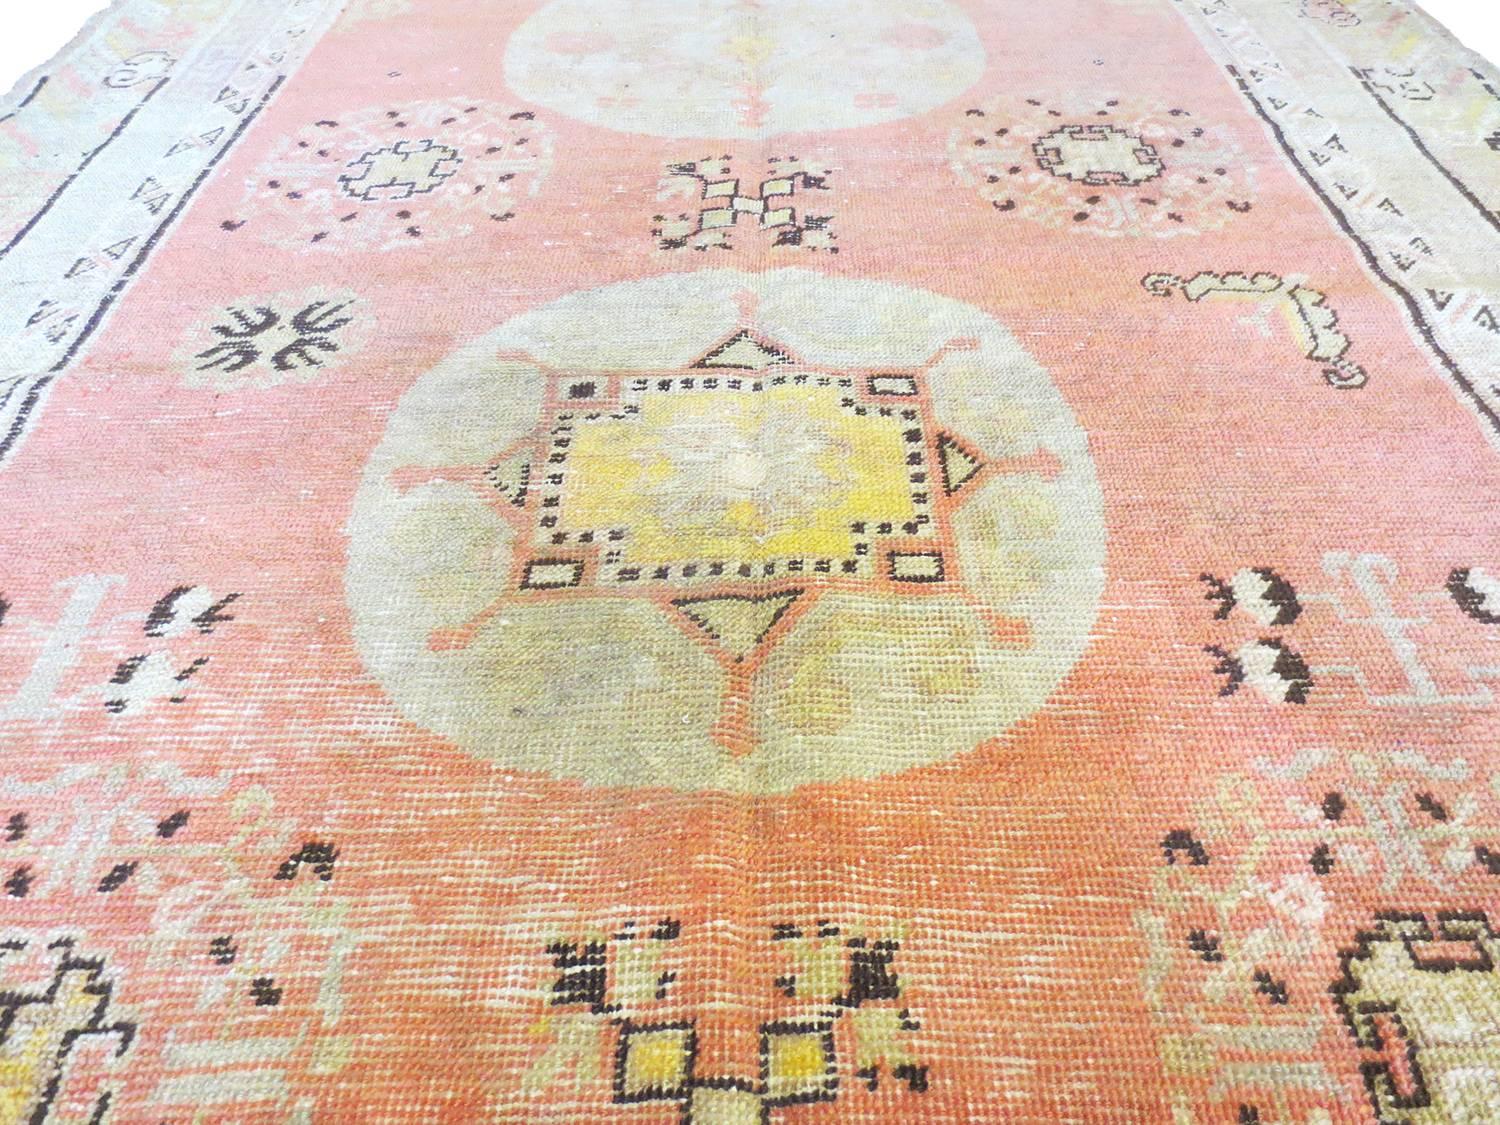 Il s'agit d'un ravissant tapis Khotan antique provenant du Turkistan oriental. Trois médaillons stylisés se détachent sur un champ de corail doux entouré d'une bordure de nuages. Des représentations de grenades, de papillons et d'autres motifs